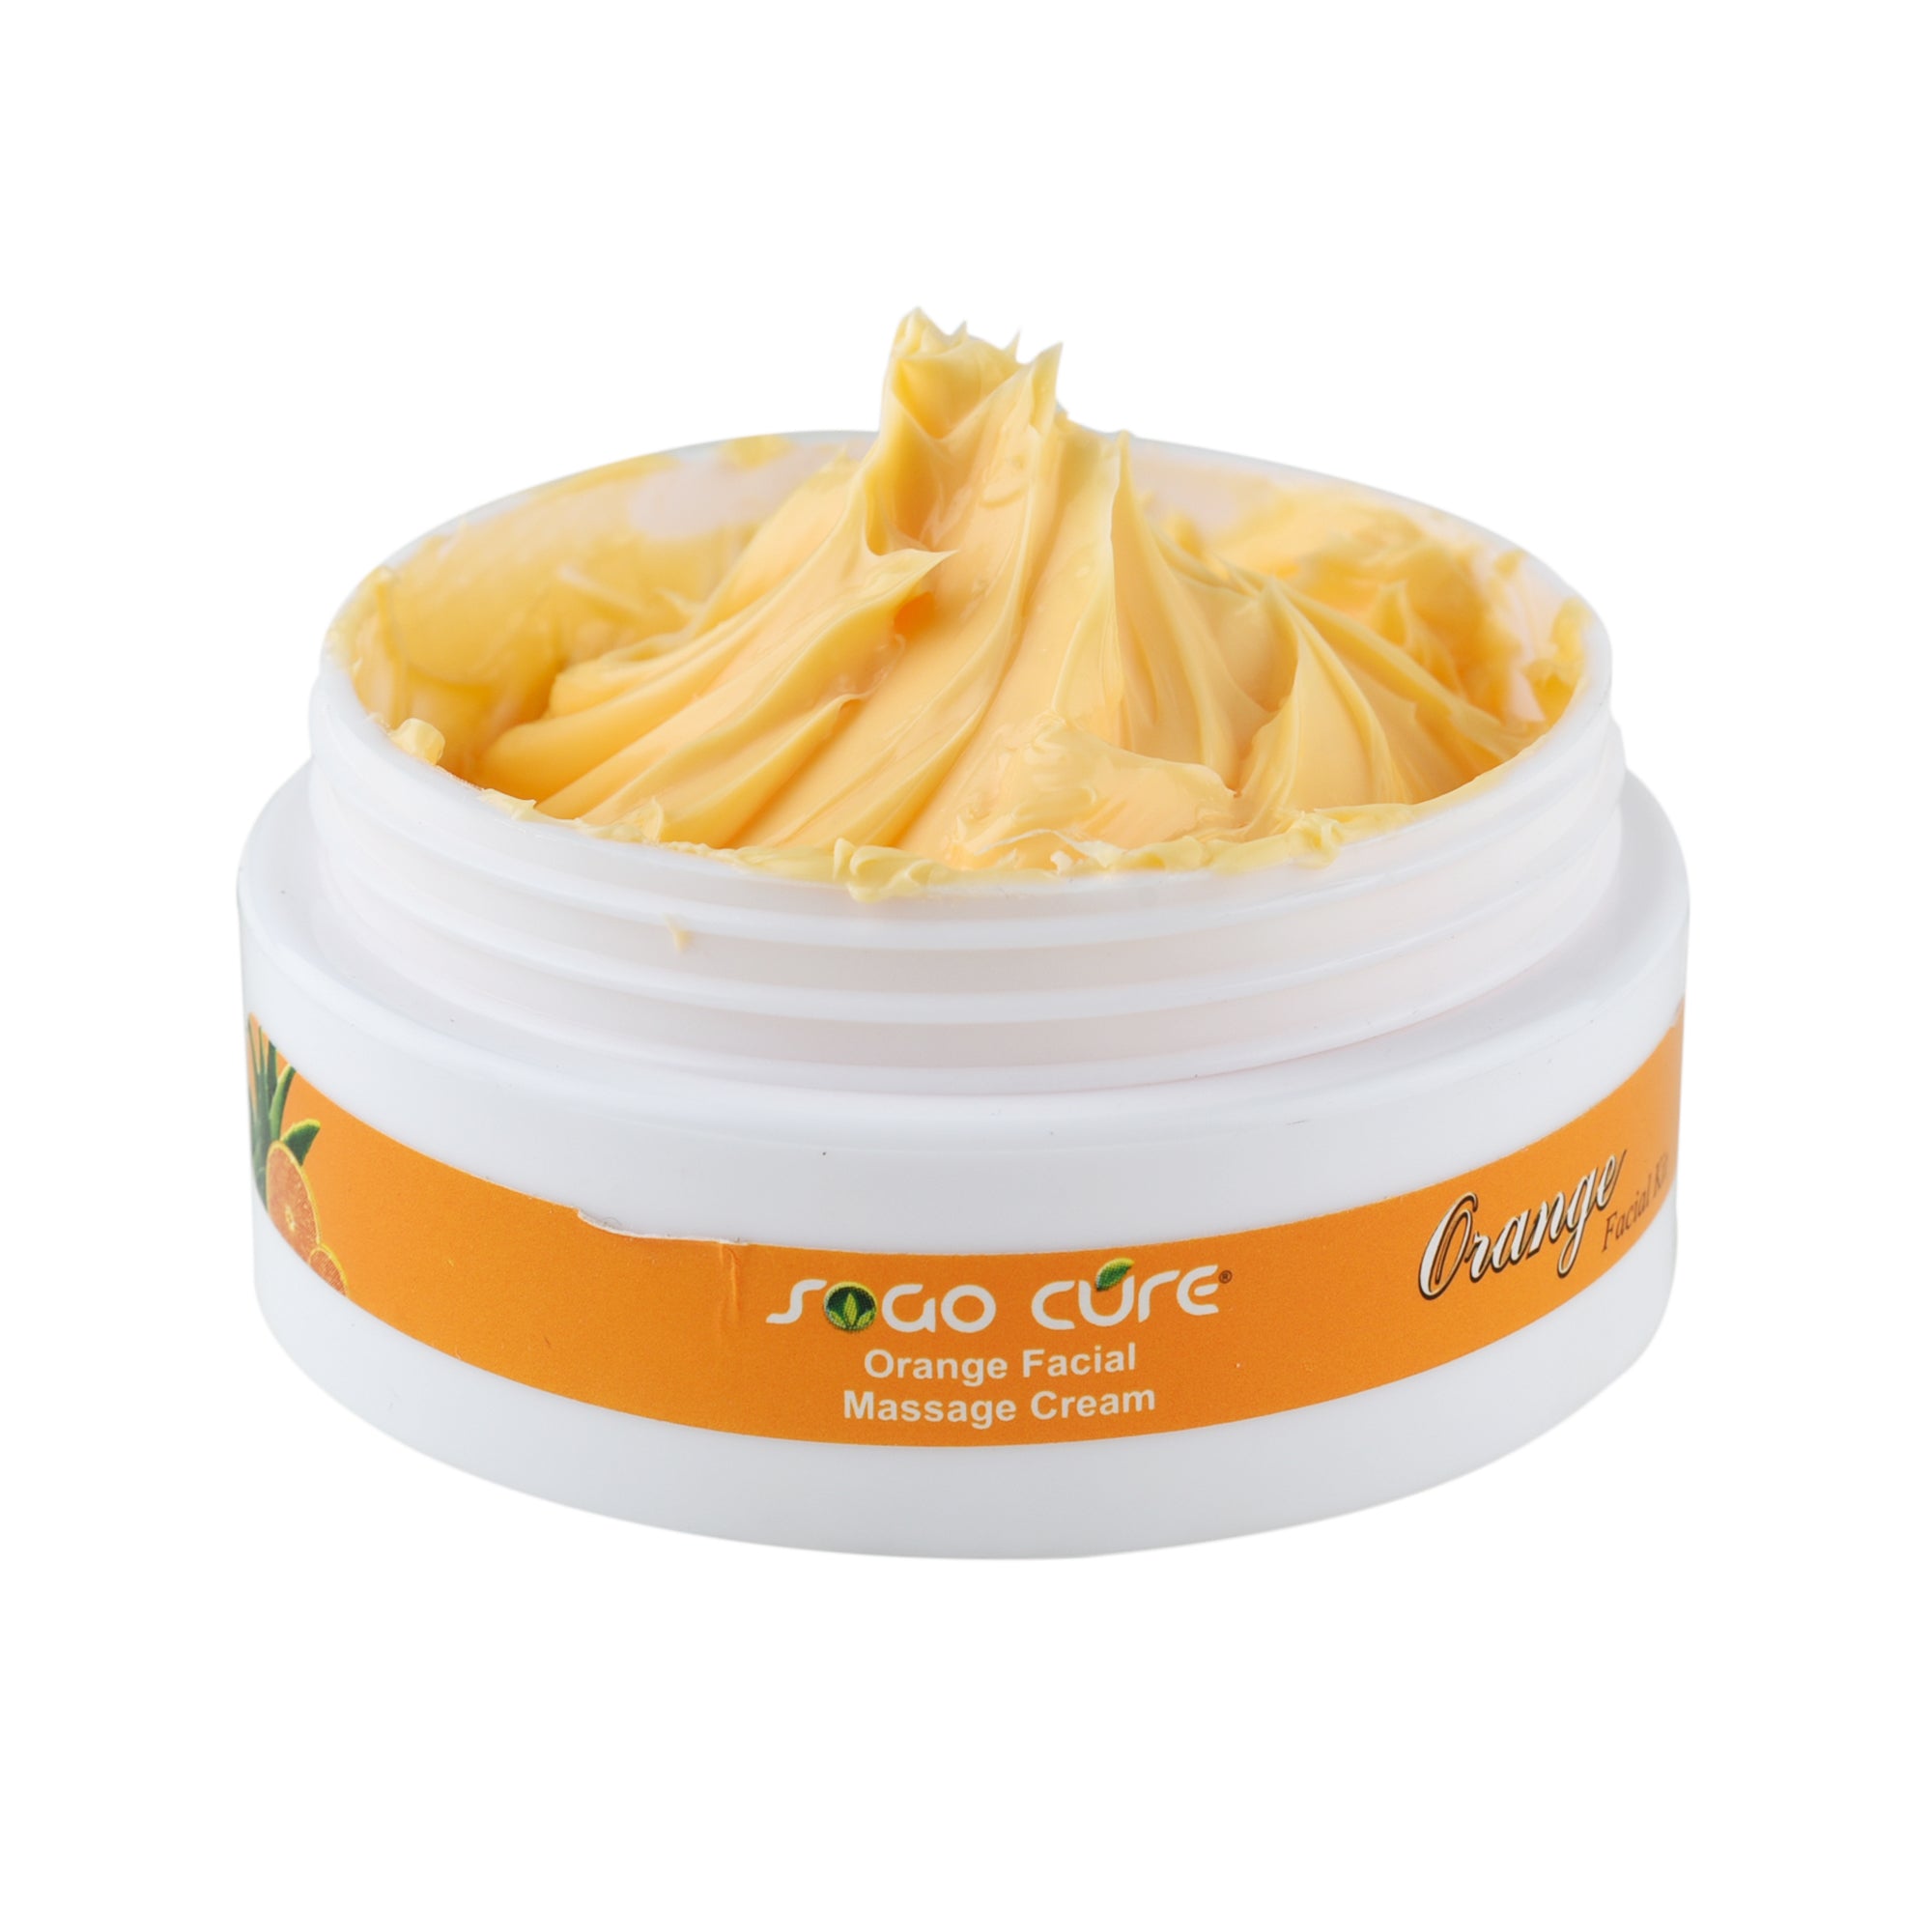 Orange Facial Kit for Glowing Skin | Detin, Anti-Blemish, & Reduce Fine Lines & Dark Circles | Facial gel, Walnut scrub, Orange facial massage cream, Orange face pack for Women & Men